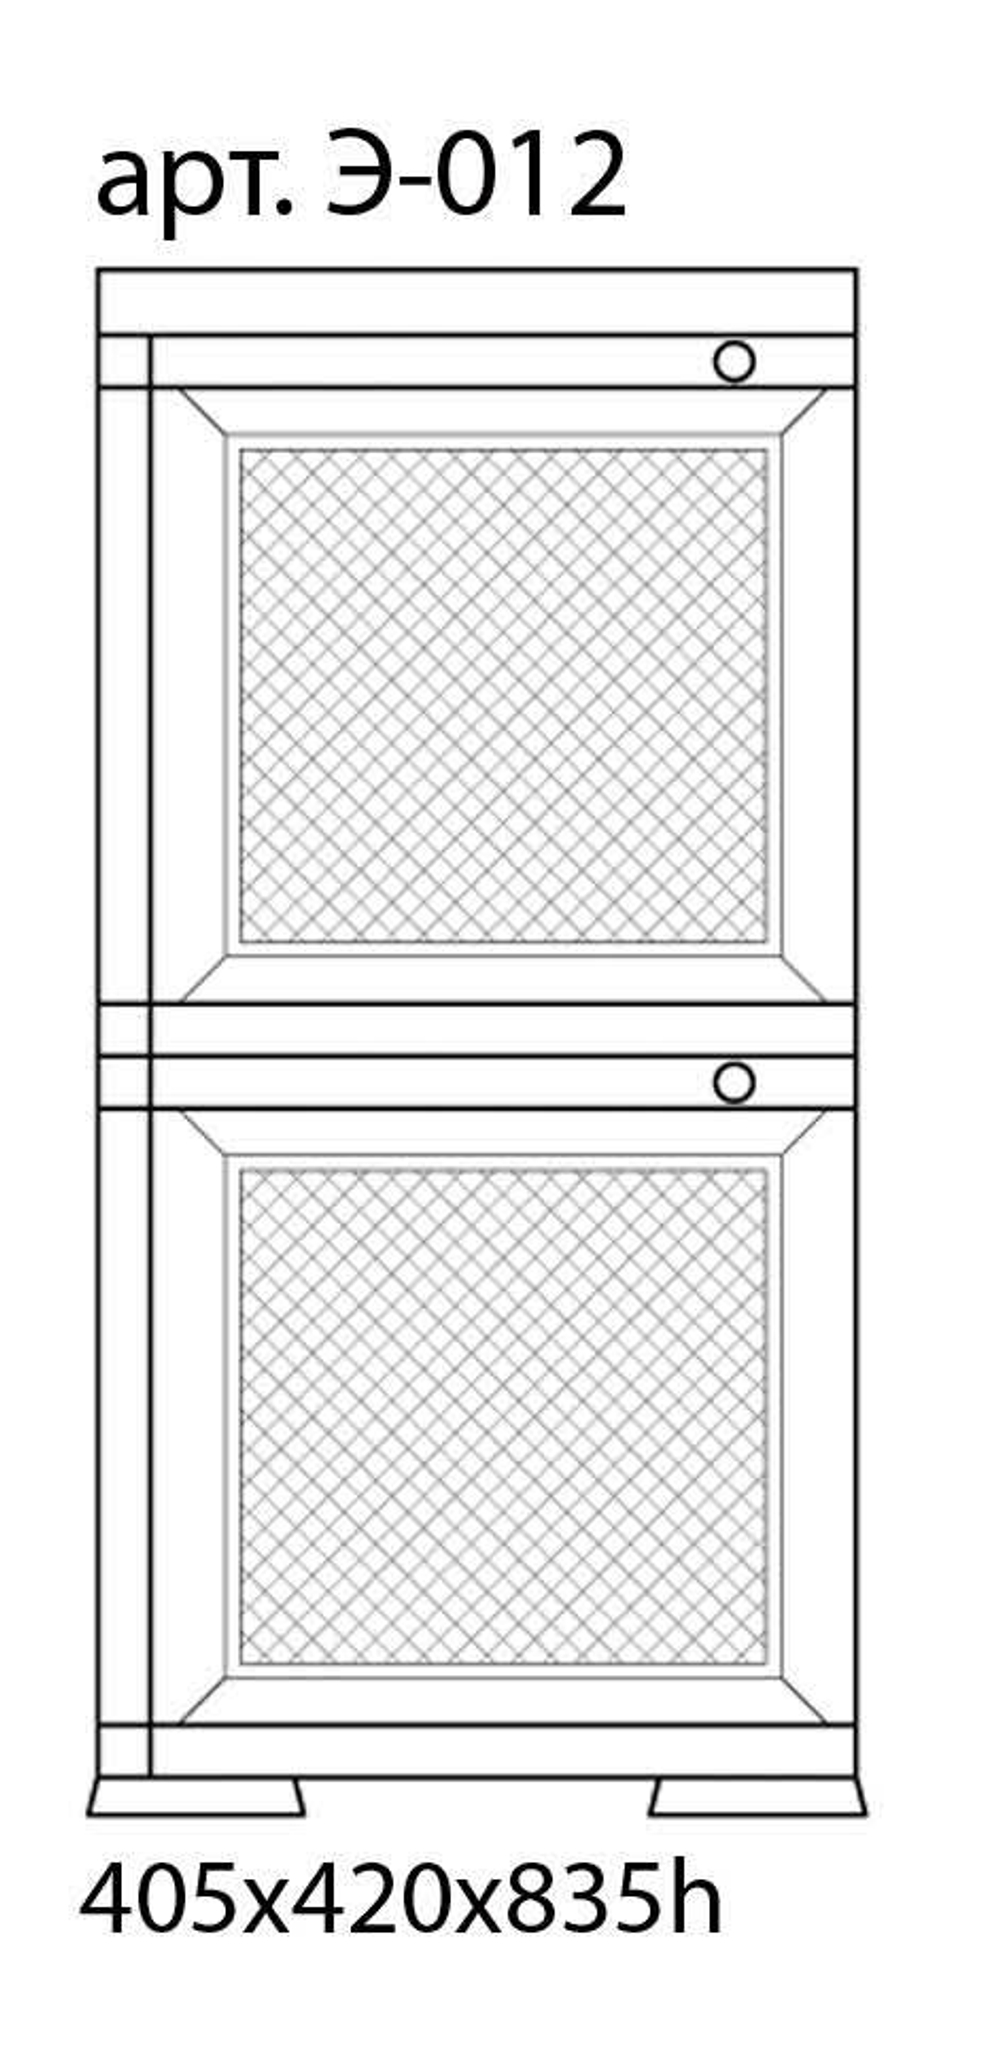 Тумба-шкаф пластиковая "УЮТ", две дверцы (верхняя плетёная, нижняя плетёная). Цвет: Коричневый бежево-шоколадными дверцами.